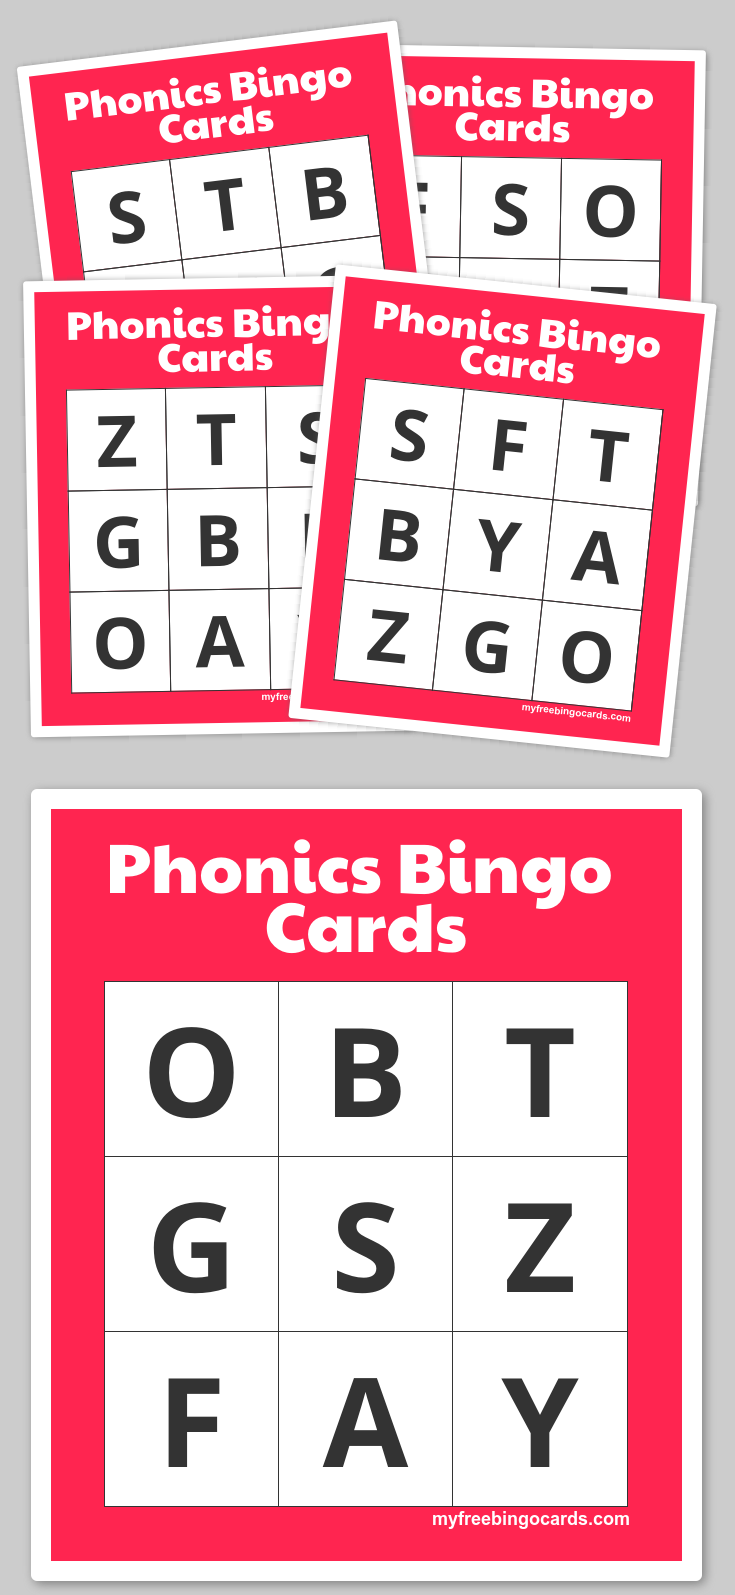 Phonics Bingo Cards Bingo Cards Bingo Cards